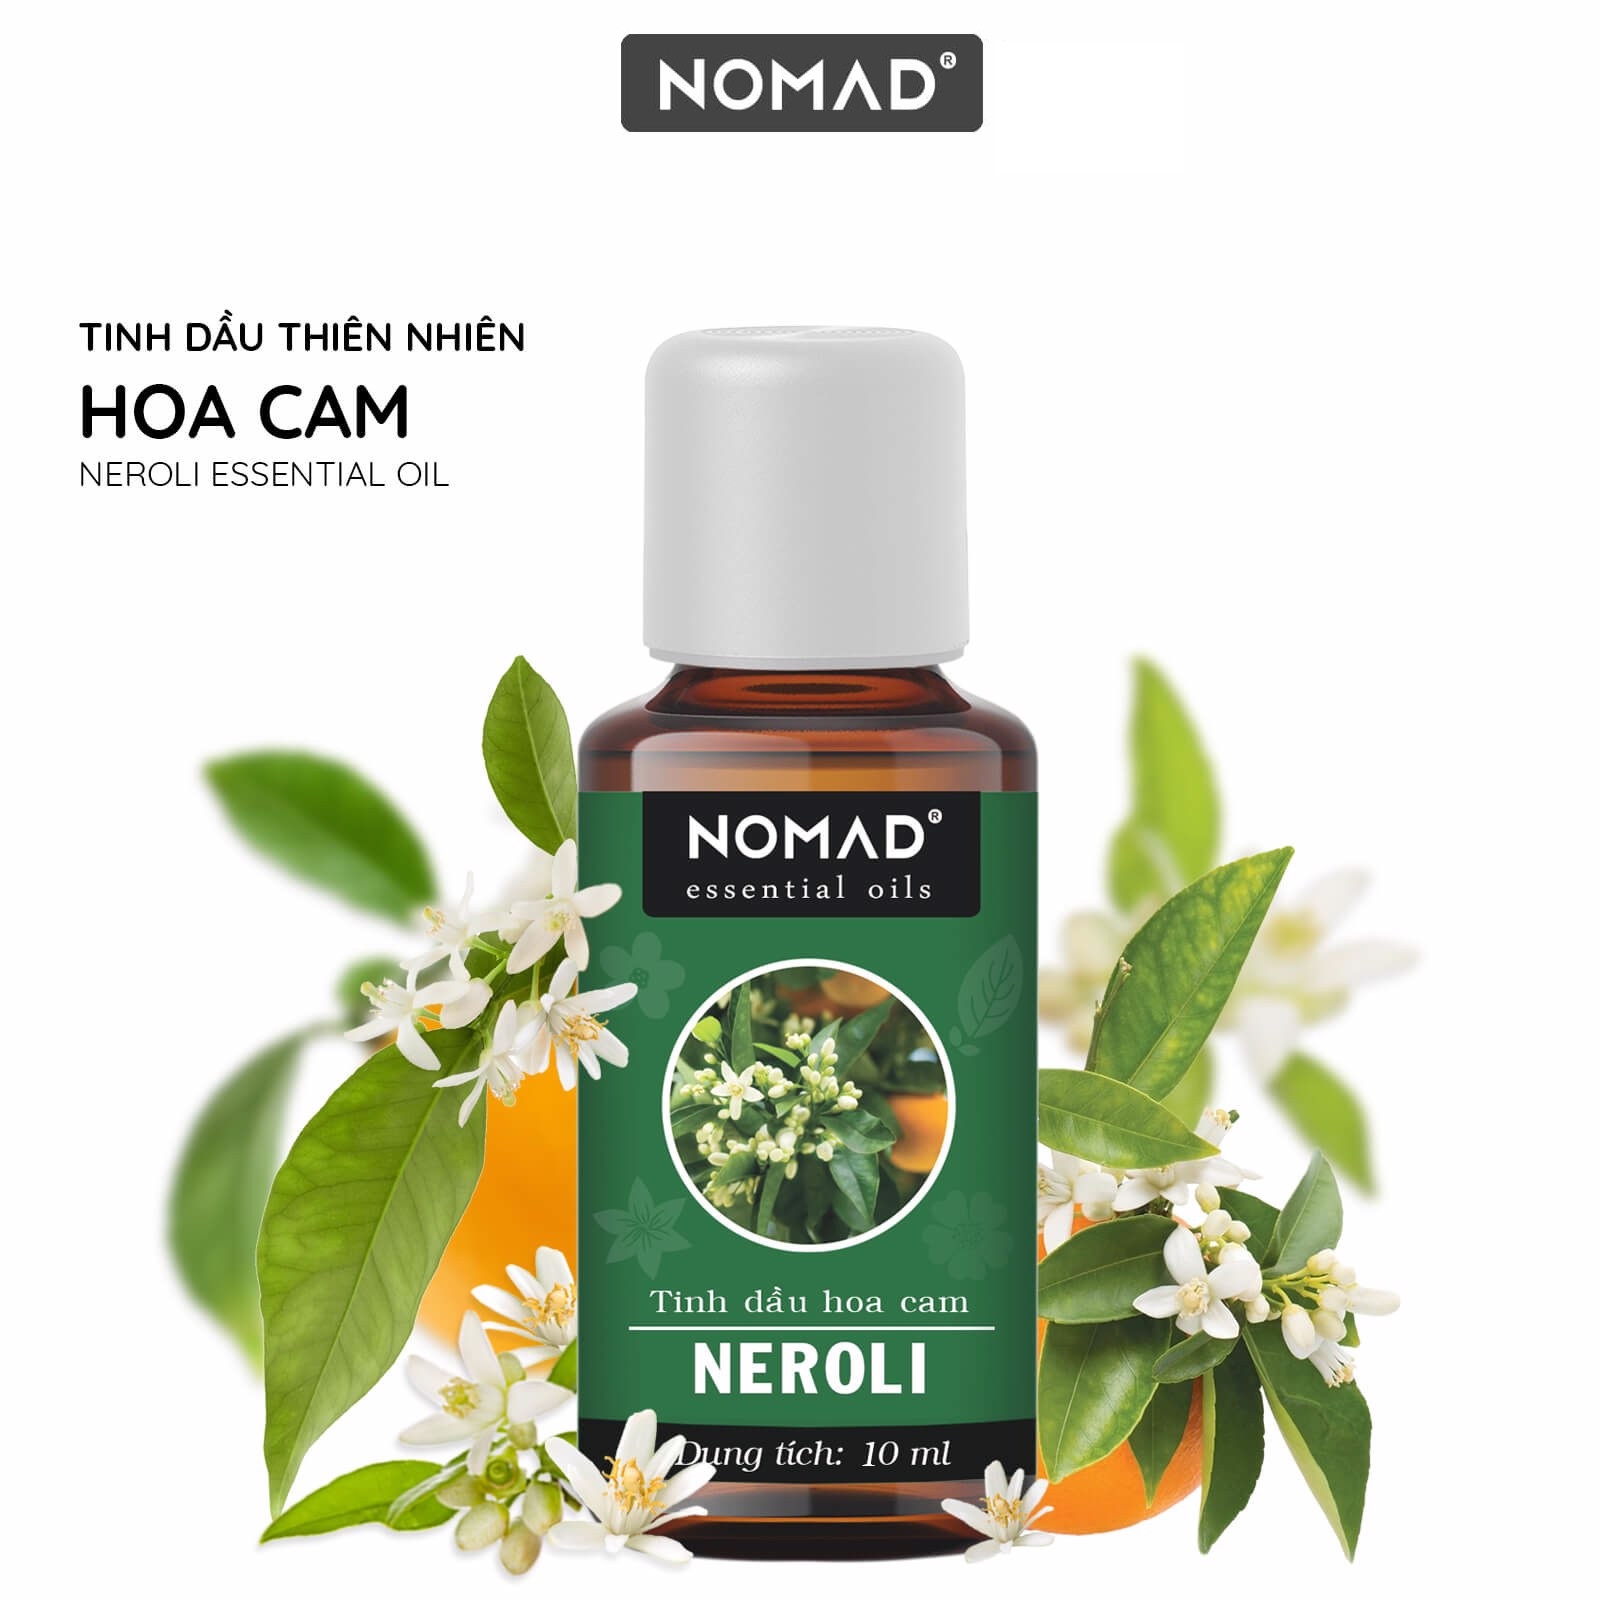 Tinh Dầu Hoa Cam Nomad Neroli Essential Oil Blend